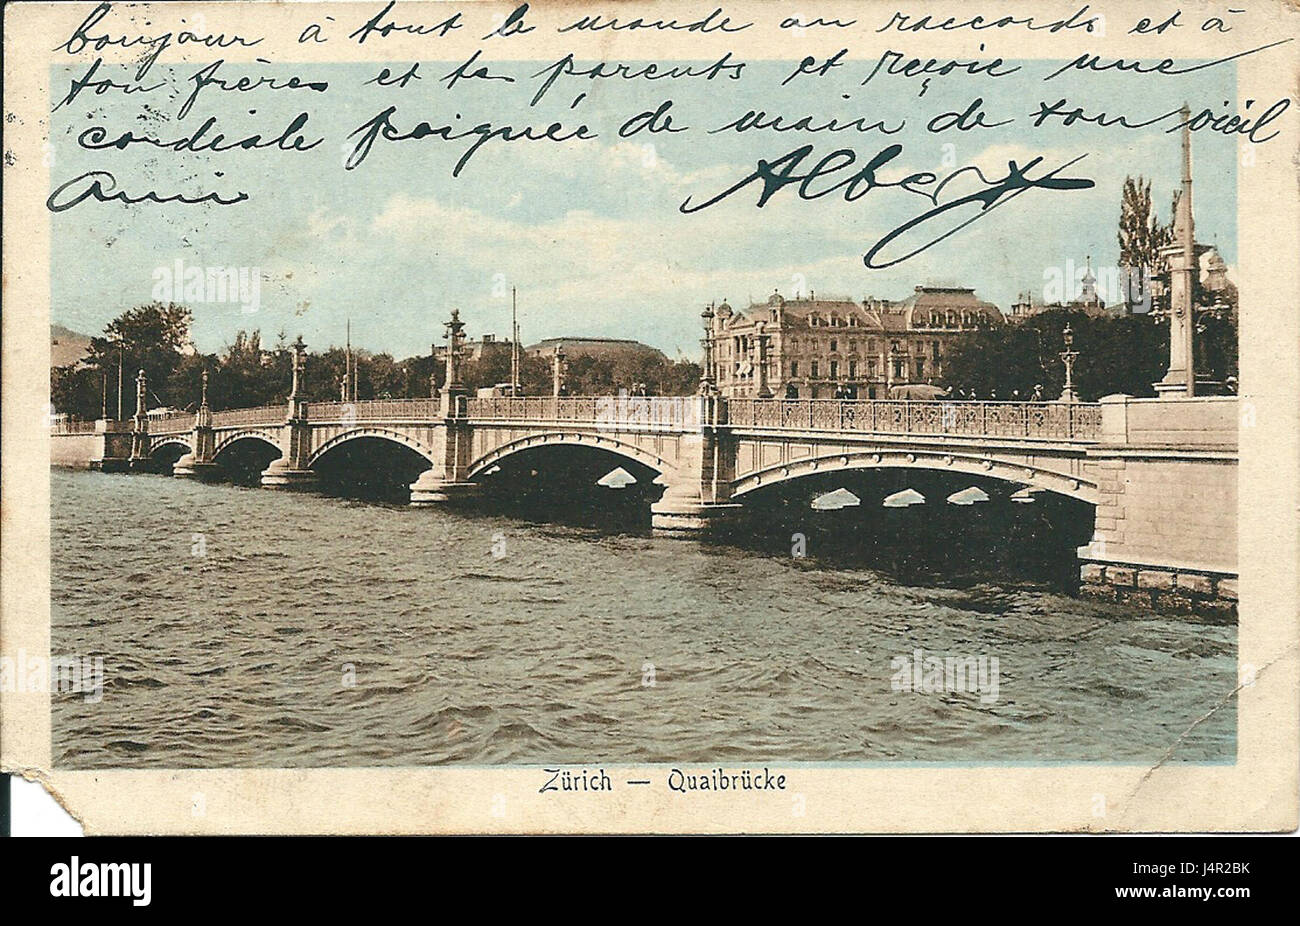 Zurich pont 1920 Stock Photo